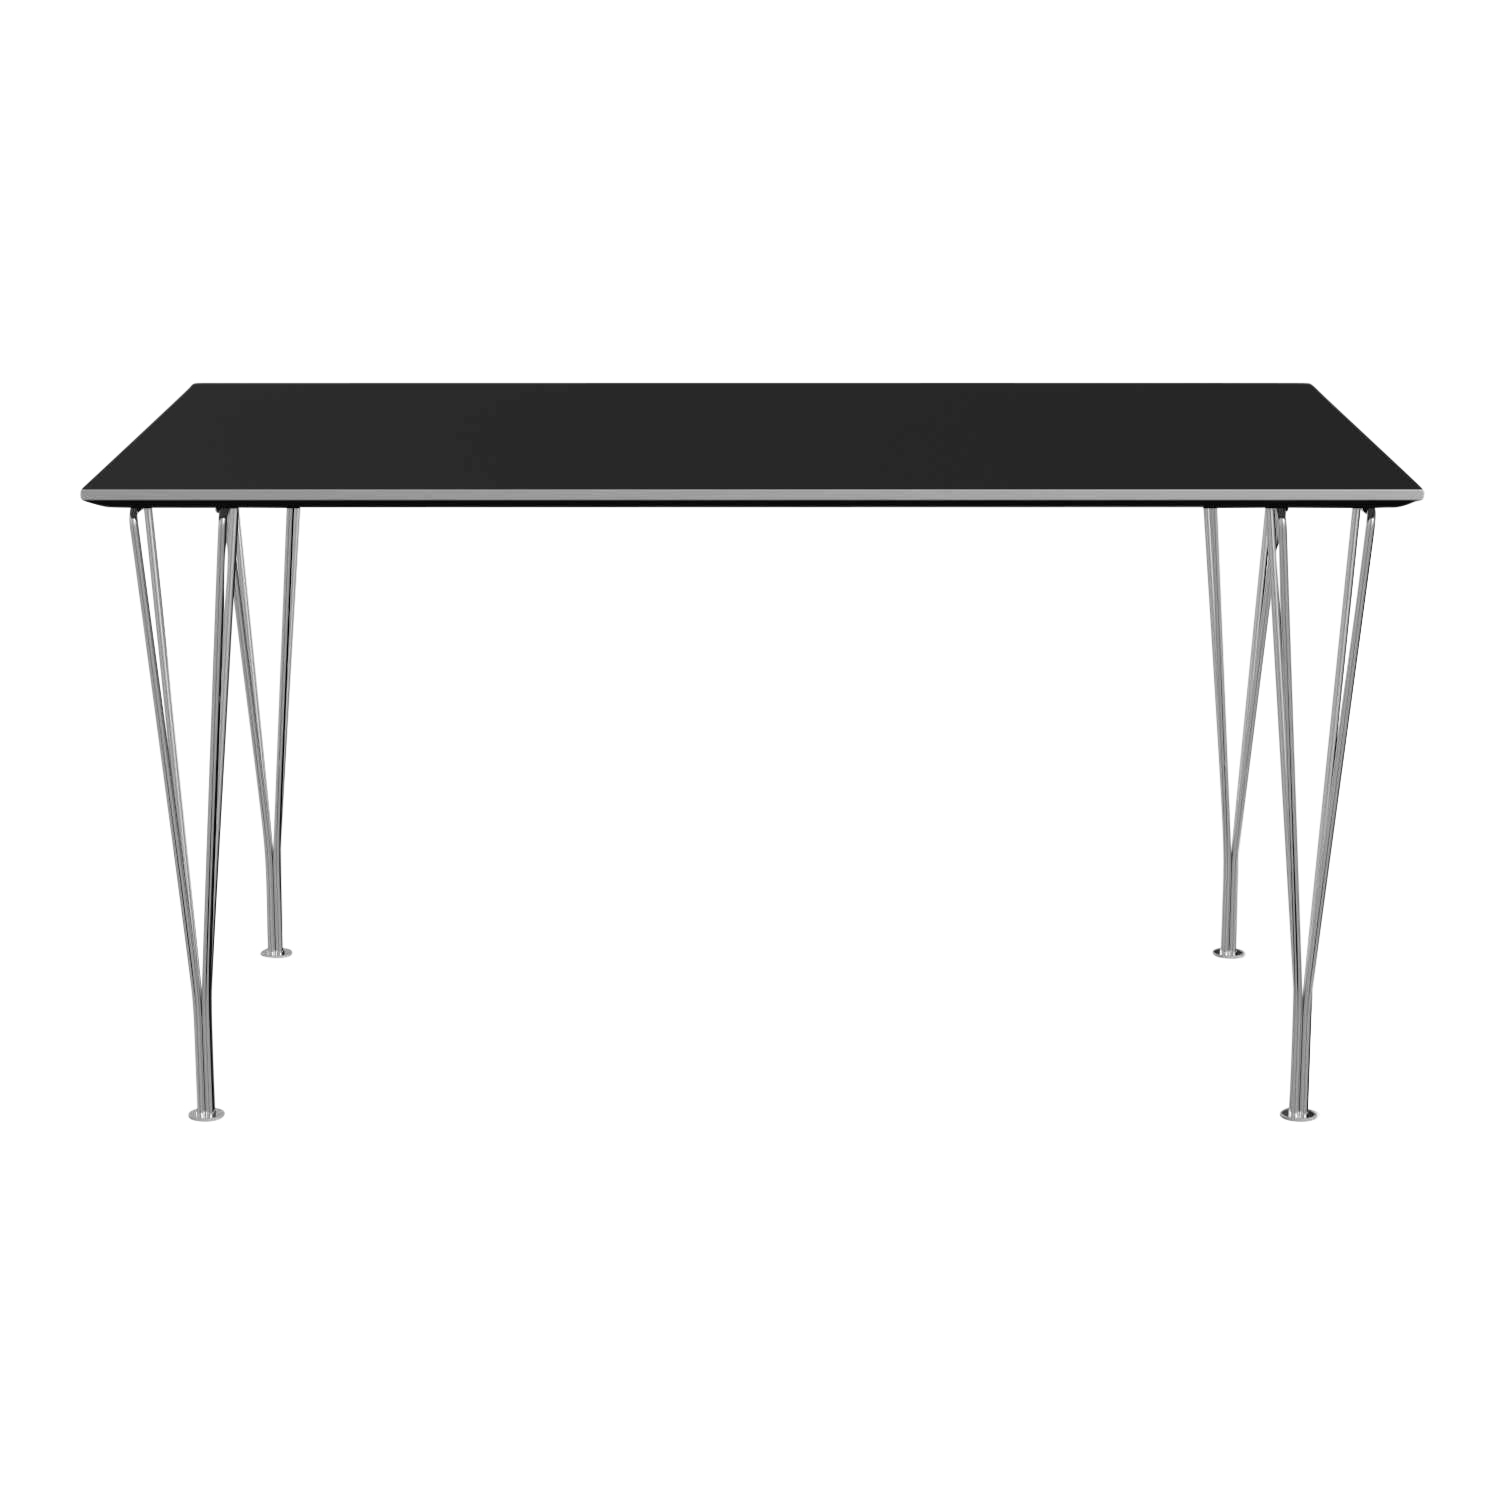 RECTANGULAR Esstisch, Tischplatte laminat, grau efeso m. kante aluminium, Grösse l. 160 x b. 80 cm, Gestell braun bronze (390) pulverbeschichtet von Fritz Hansen